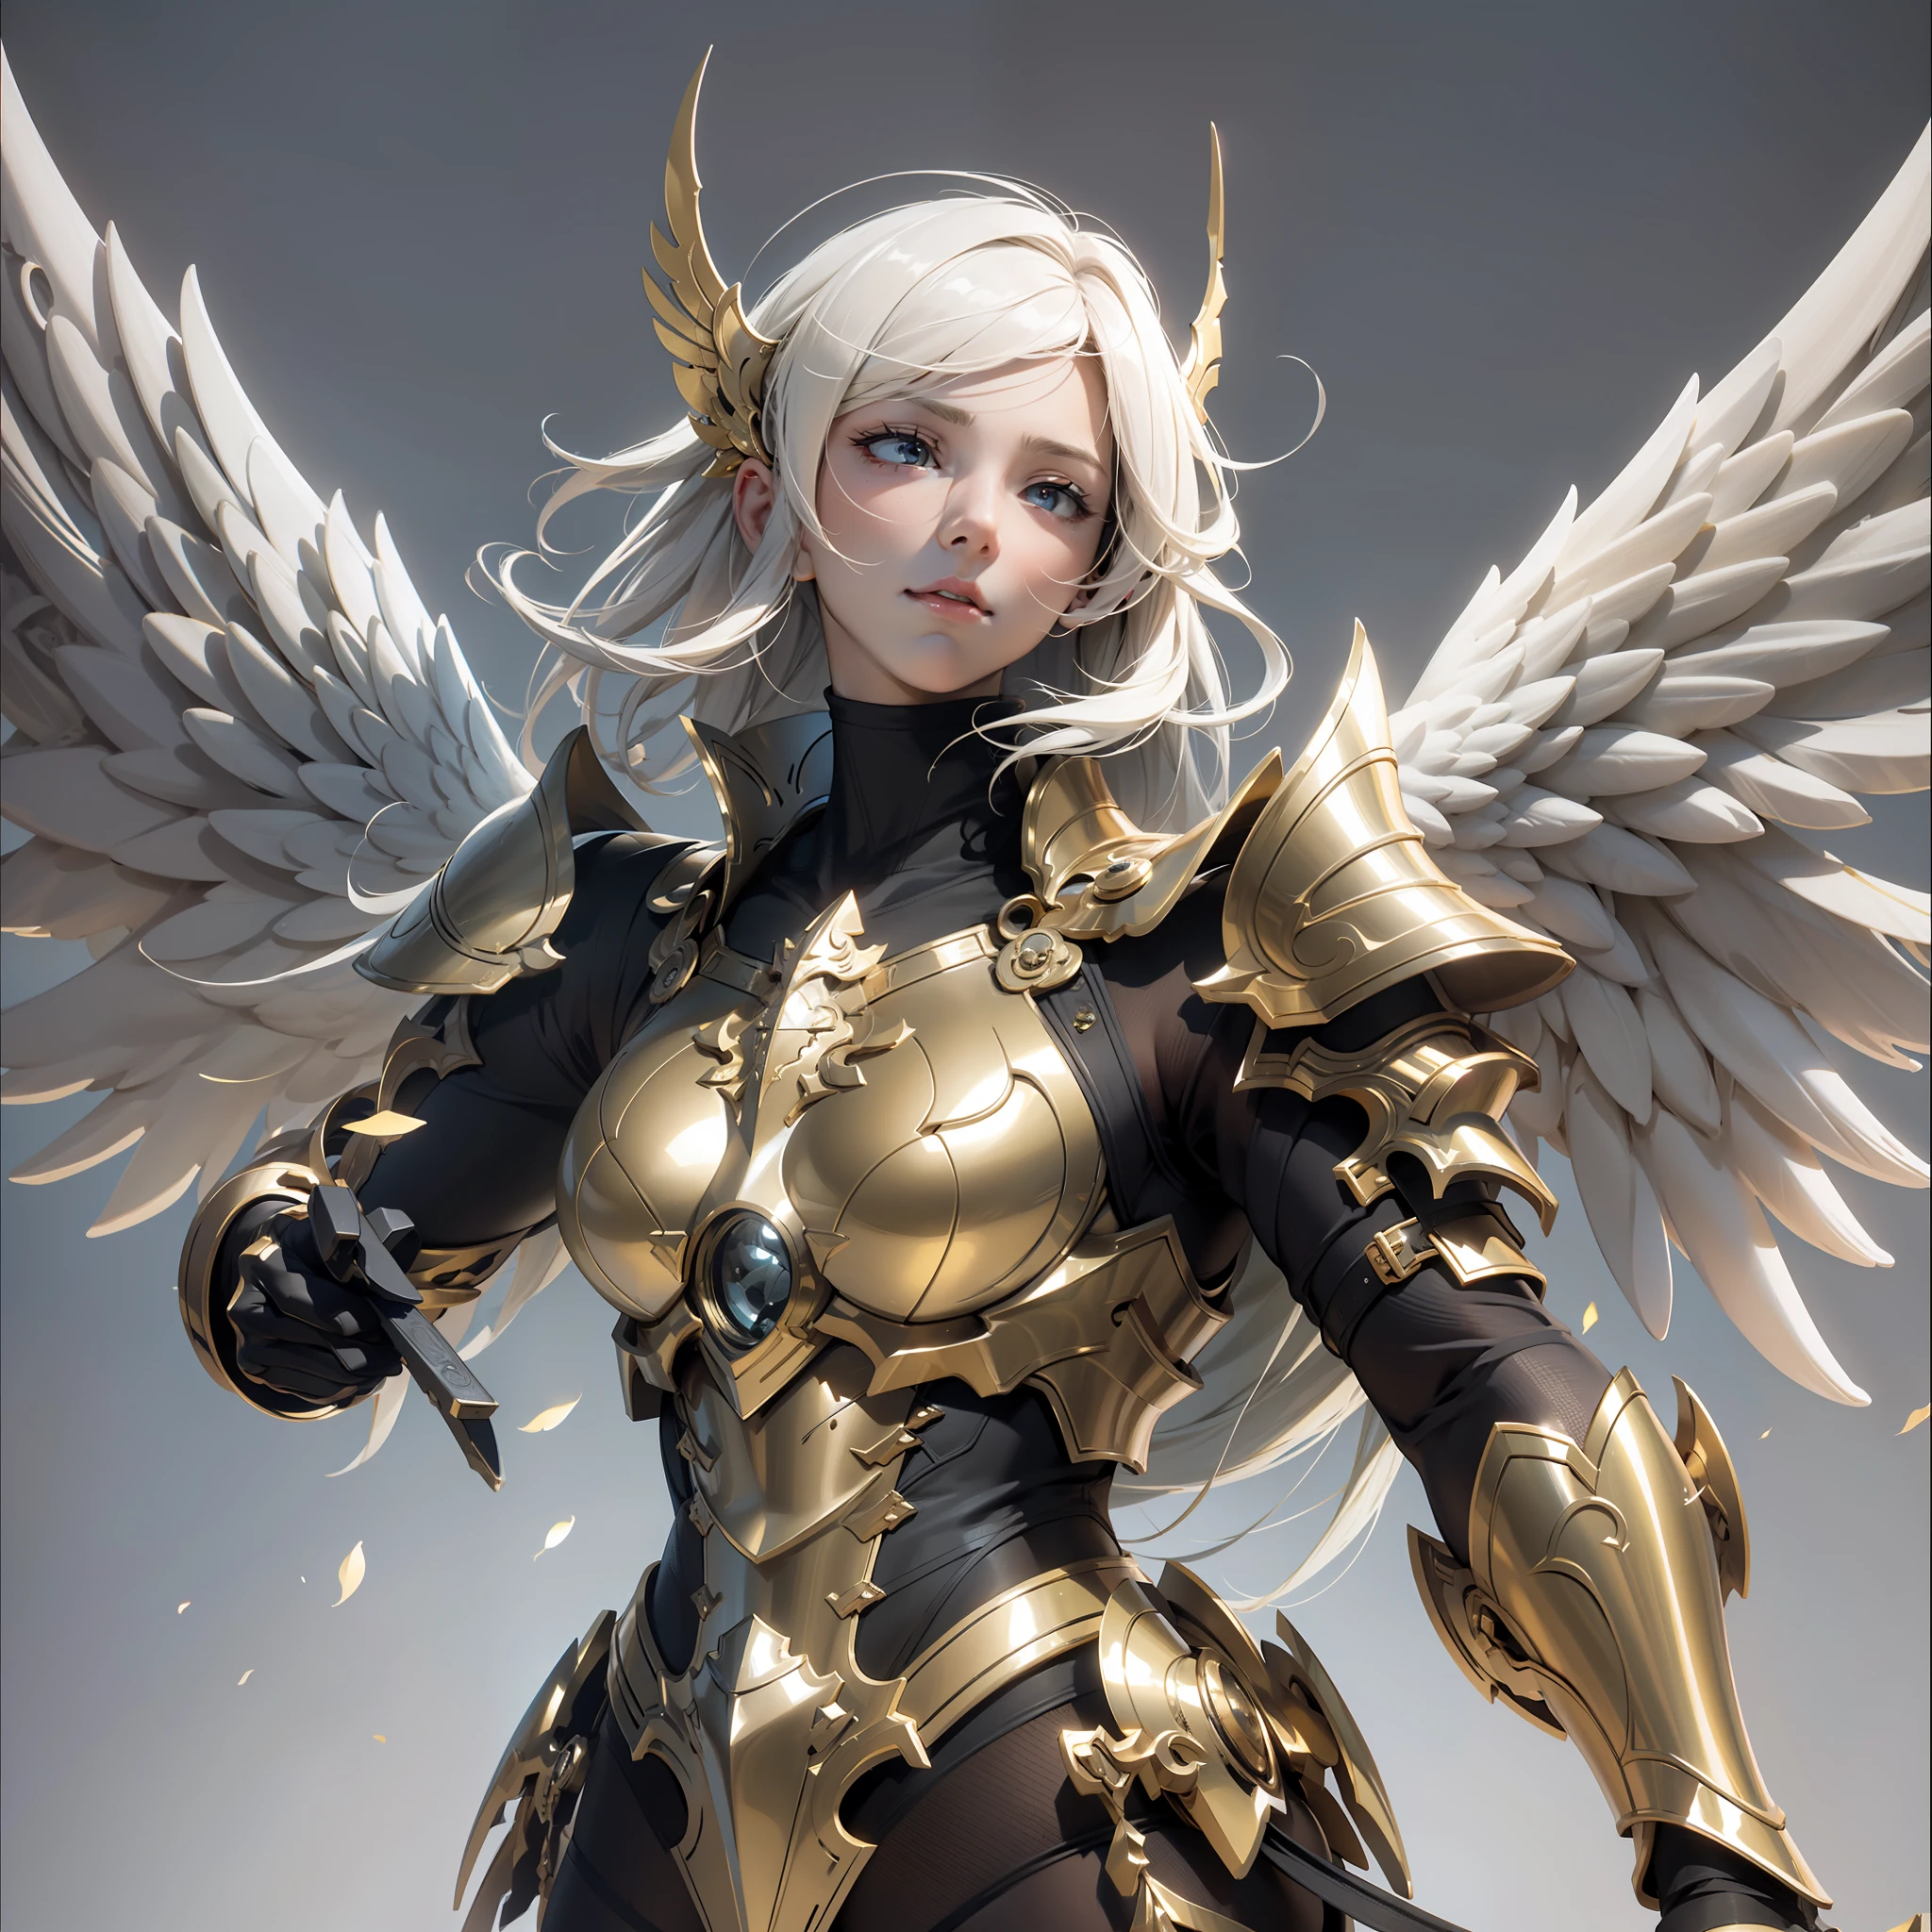 Ангел-воин, (с парой золотых крыльев на спине), ((металлические крылья)), ((золотая броня)), высокая детализация, (Красивое лицо), Идеальные черты лица, золотые волосы, золотой меч, безразличный, высокомерный, непобедимый, атмосферный, макрос, реалистичный, HDR (расширенный динамический диапазон), Трассировка лучей, NVIDIA РТХ, Супер разрешение, Нереально 5, Подповерхностное рассеяние, Постобработка, Анизотропная фильтрация, глубина резкости, Максимальная резкость и резкость, Альбедо и зеркальное отображение, Затенение поверхности, Точное моделирование взаимодействия света и материала, идеальные пропорции, Октановый рендер, двухцветное освещение, Большая апертура, Низкое ISO, Баланс белого, Правило третей, 8K необработанный, Высокоэффективный субпиксель, субпиксельная свертка,